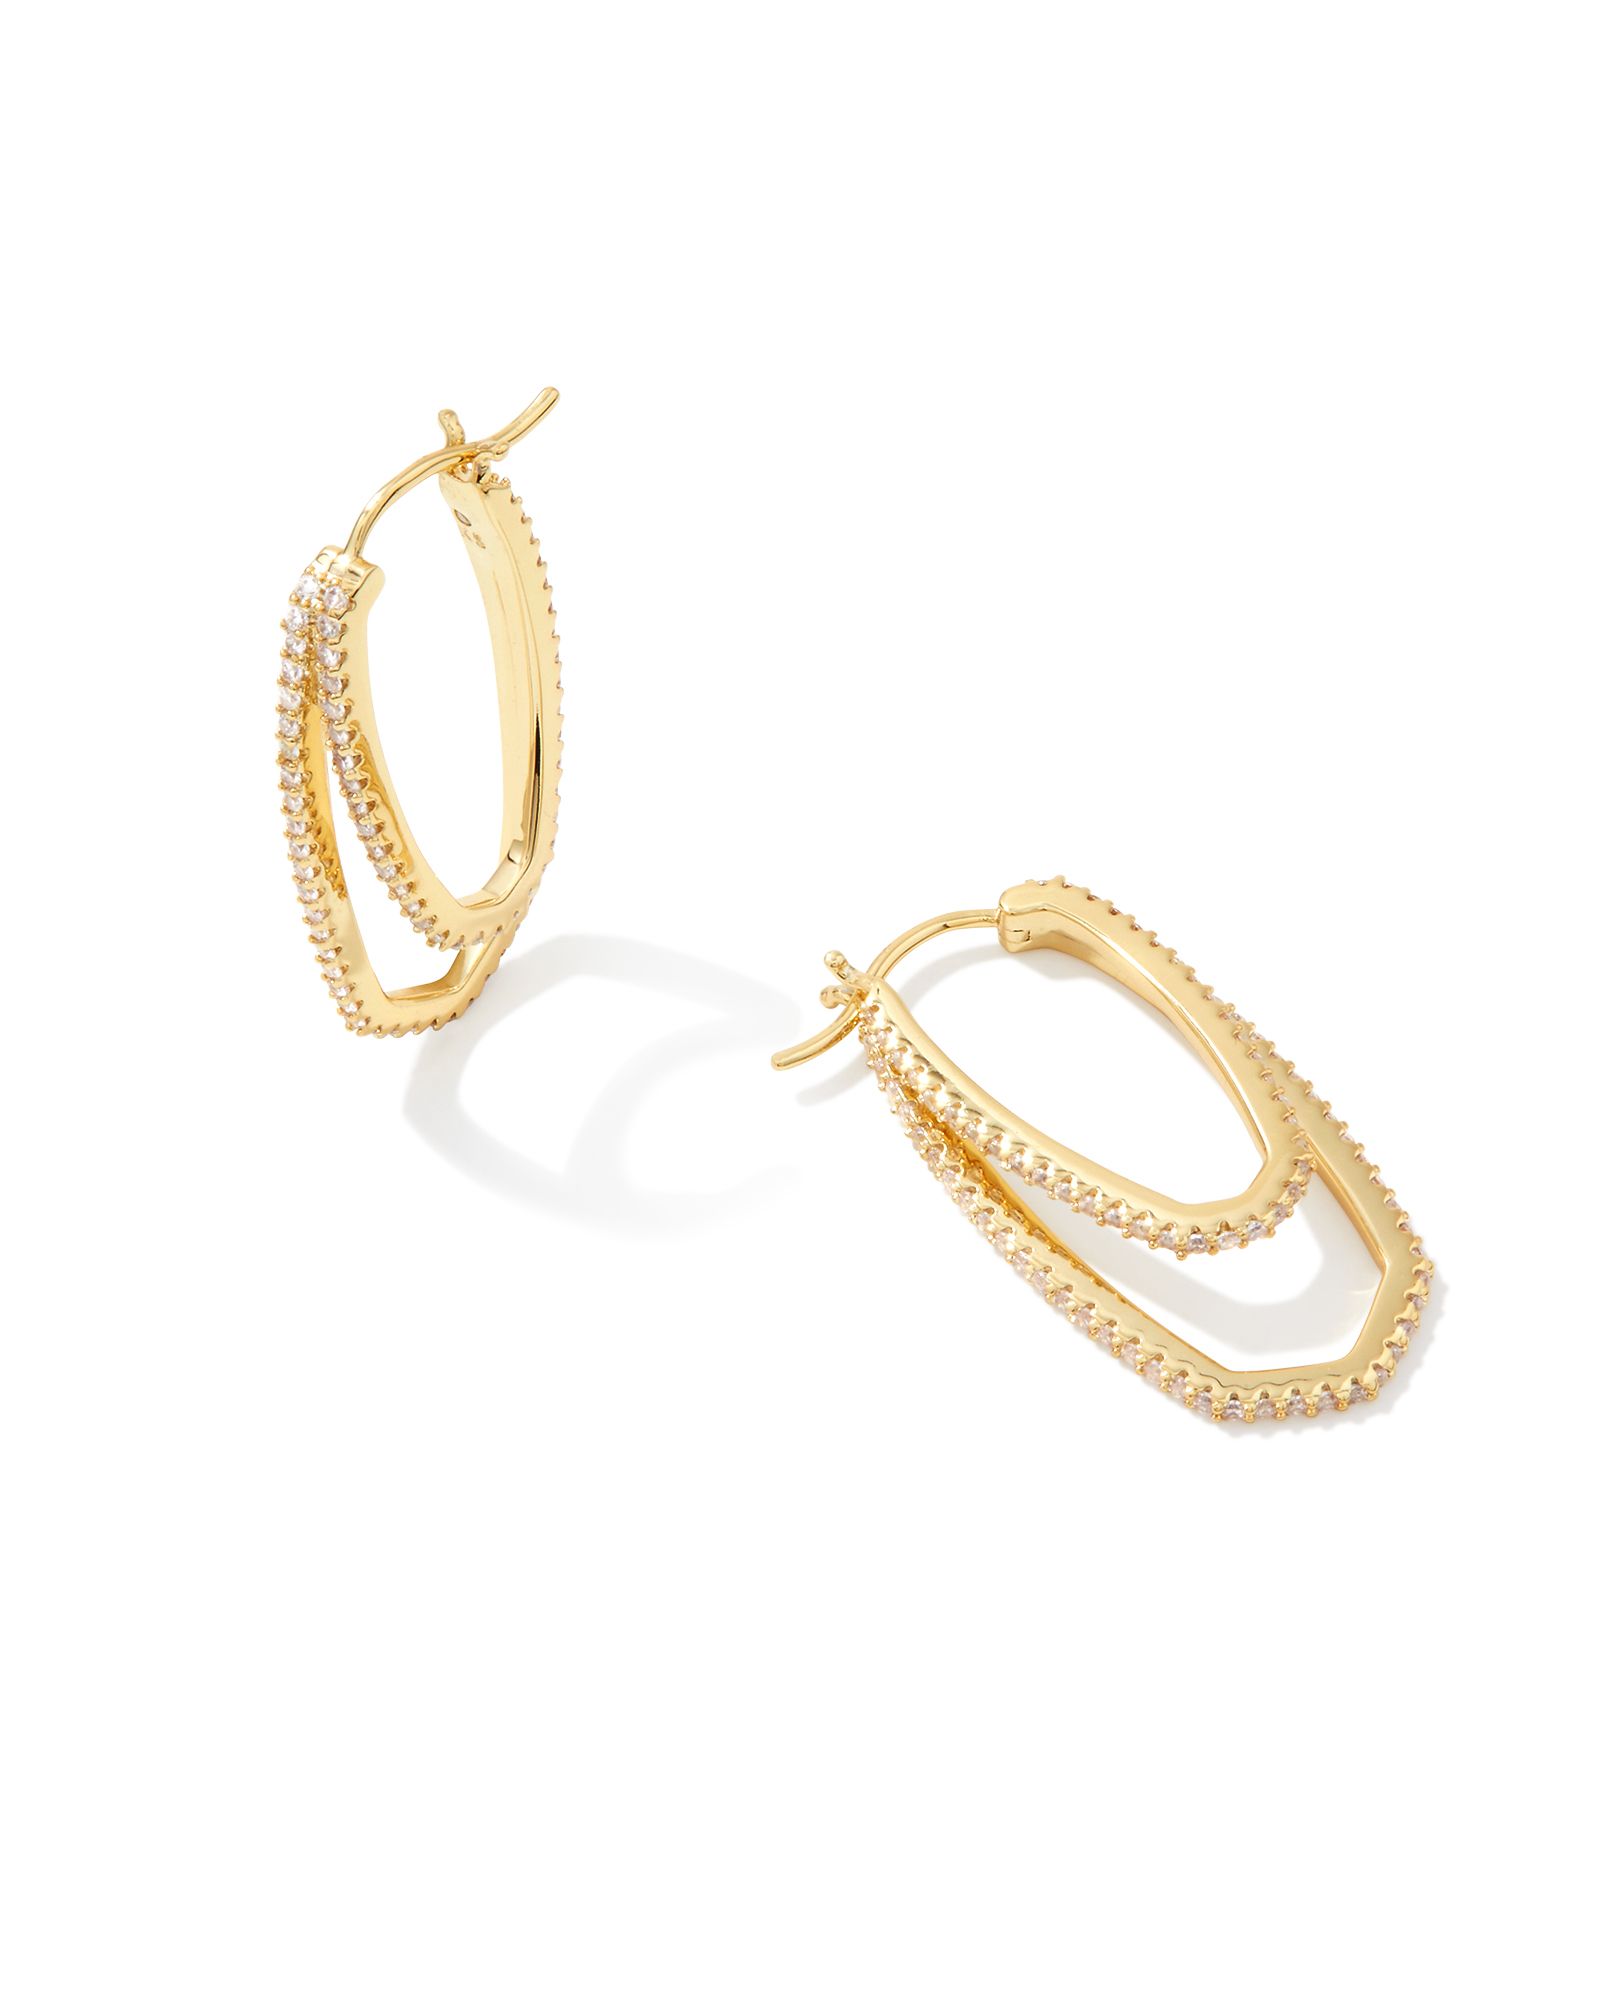 Murphy Gold Hoop Earrings in White Crystal | Kendra Scott | Kendra Scott